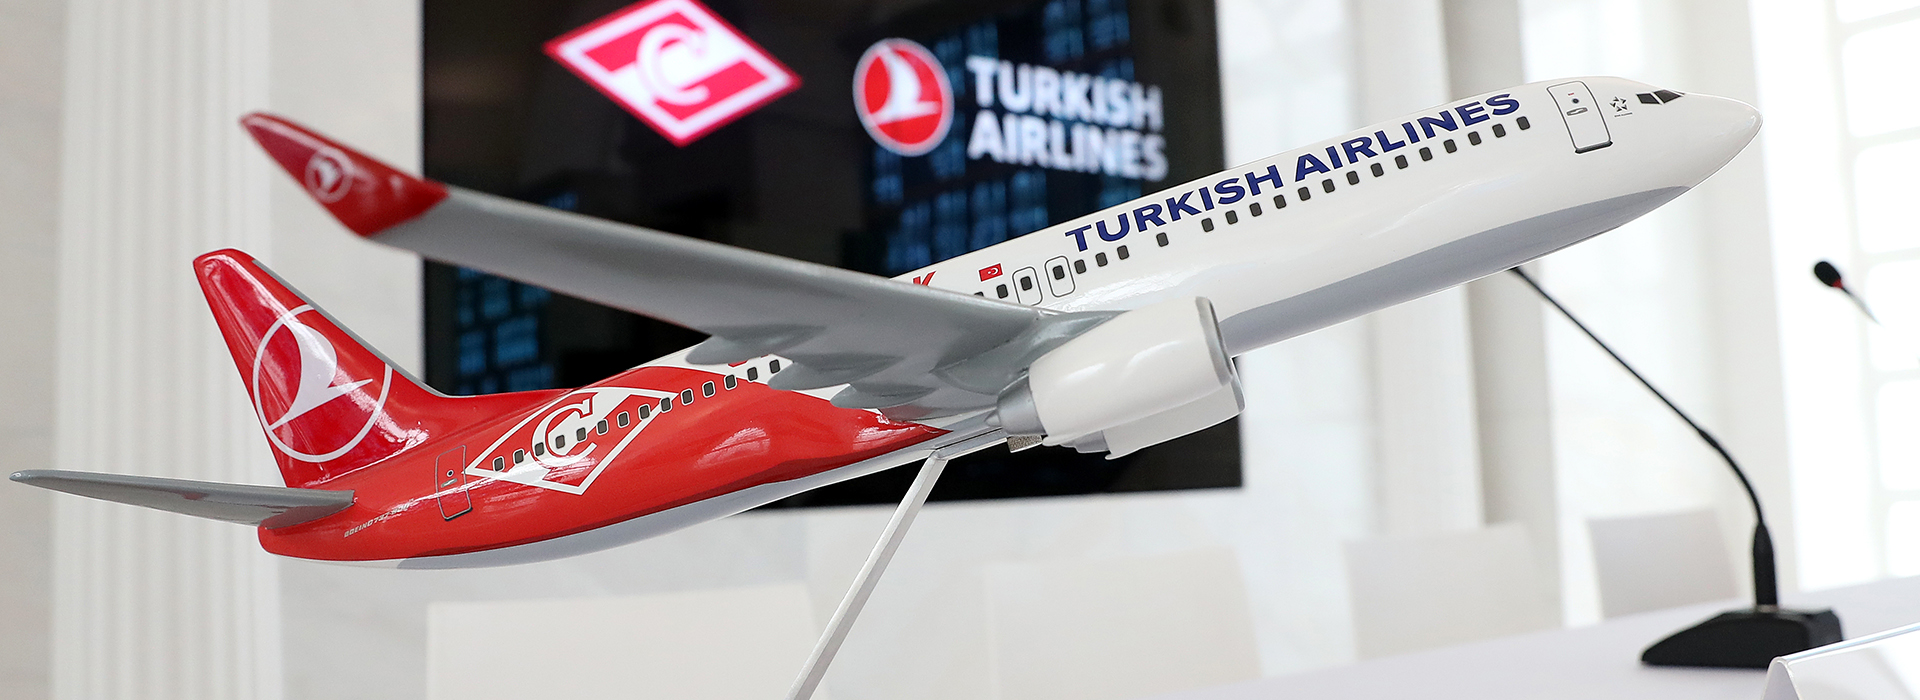 «Спартак» и Turkish Airlines: по-прежнему вместе!